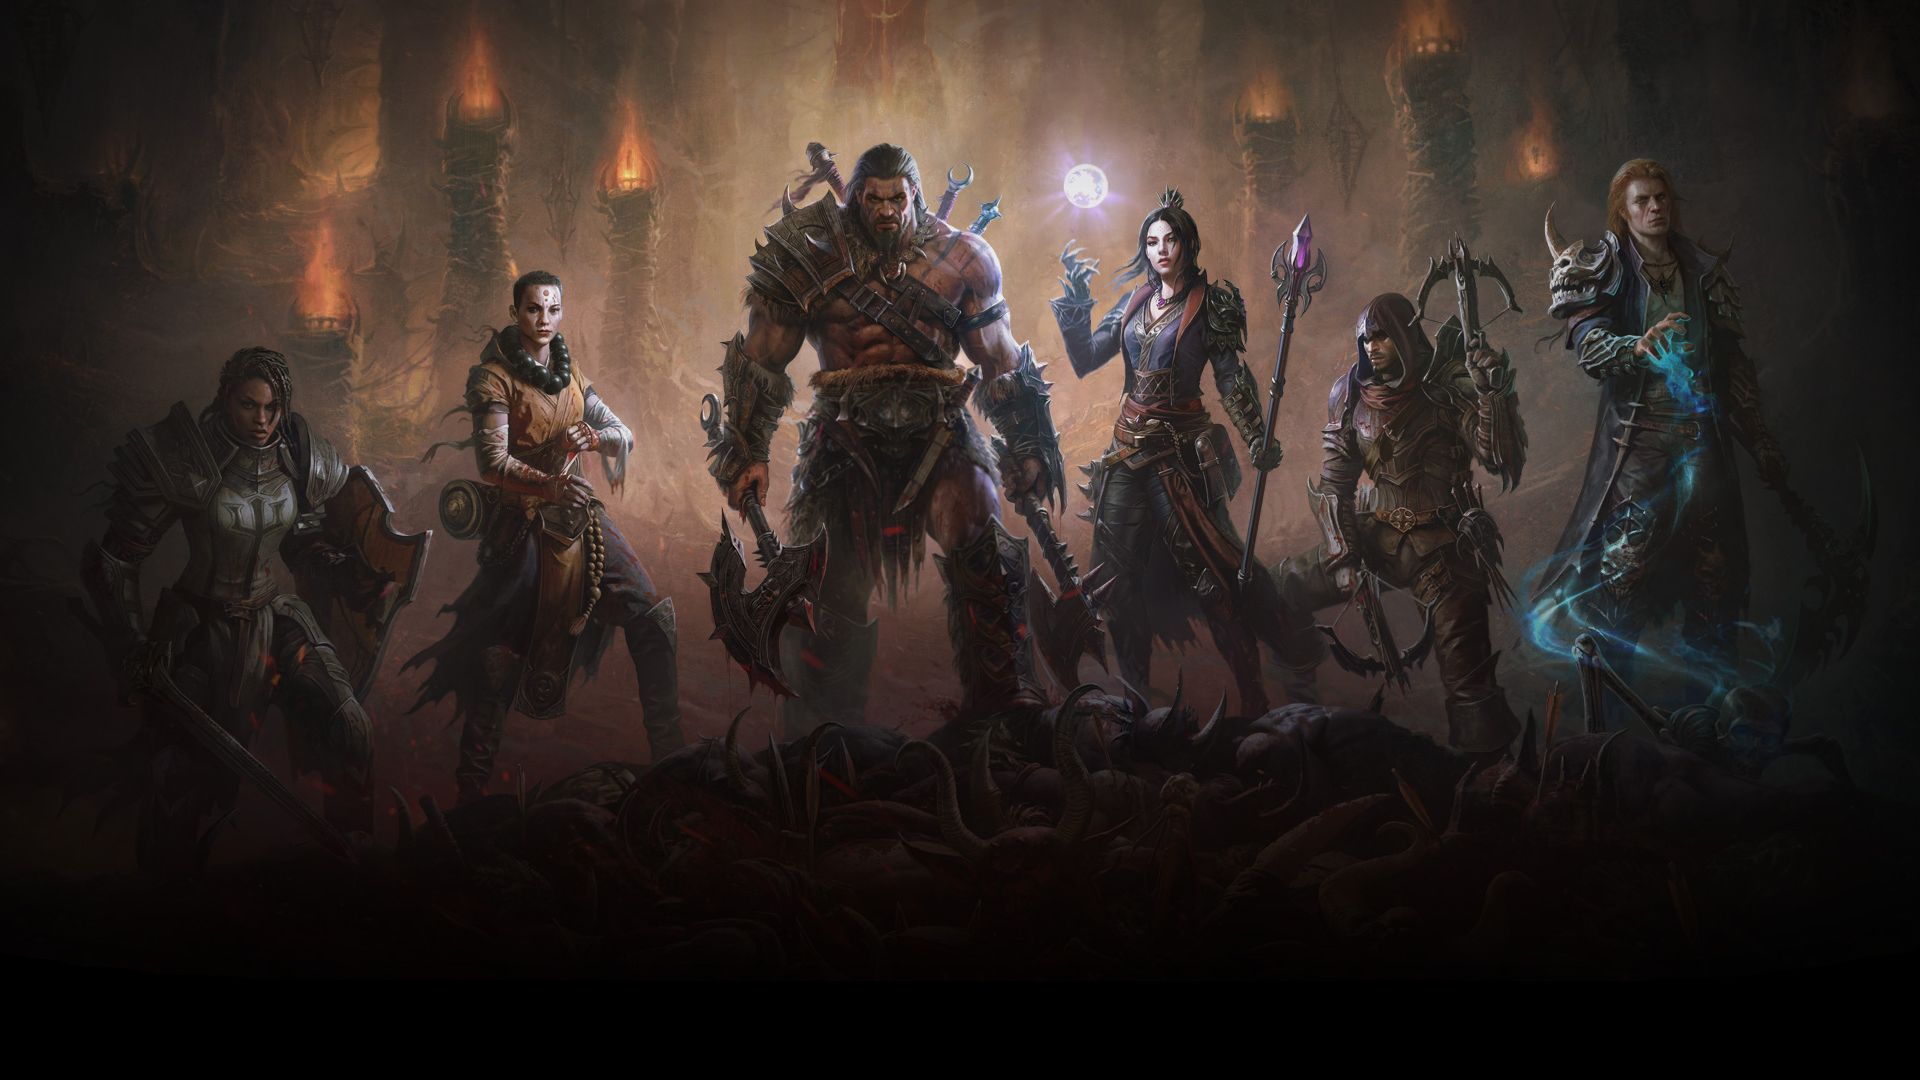 بخش داستانی بازی Diablo Immortal حدود ۲۰ ساعت طول خواهد کشید